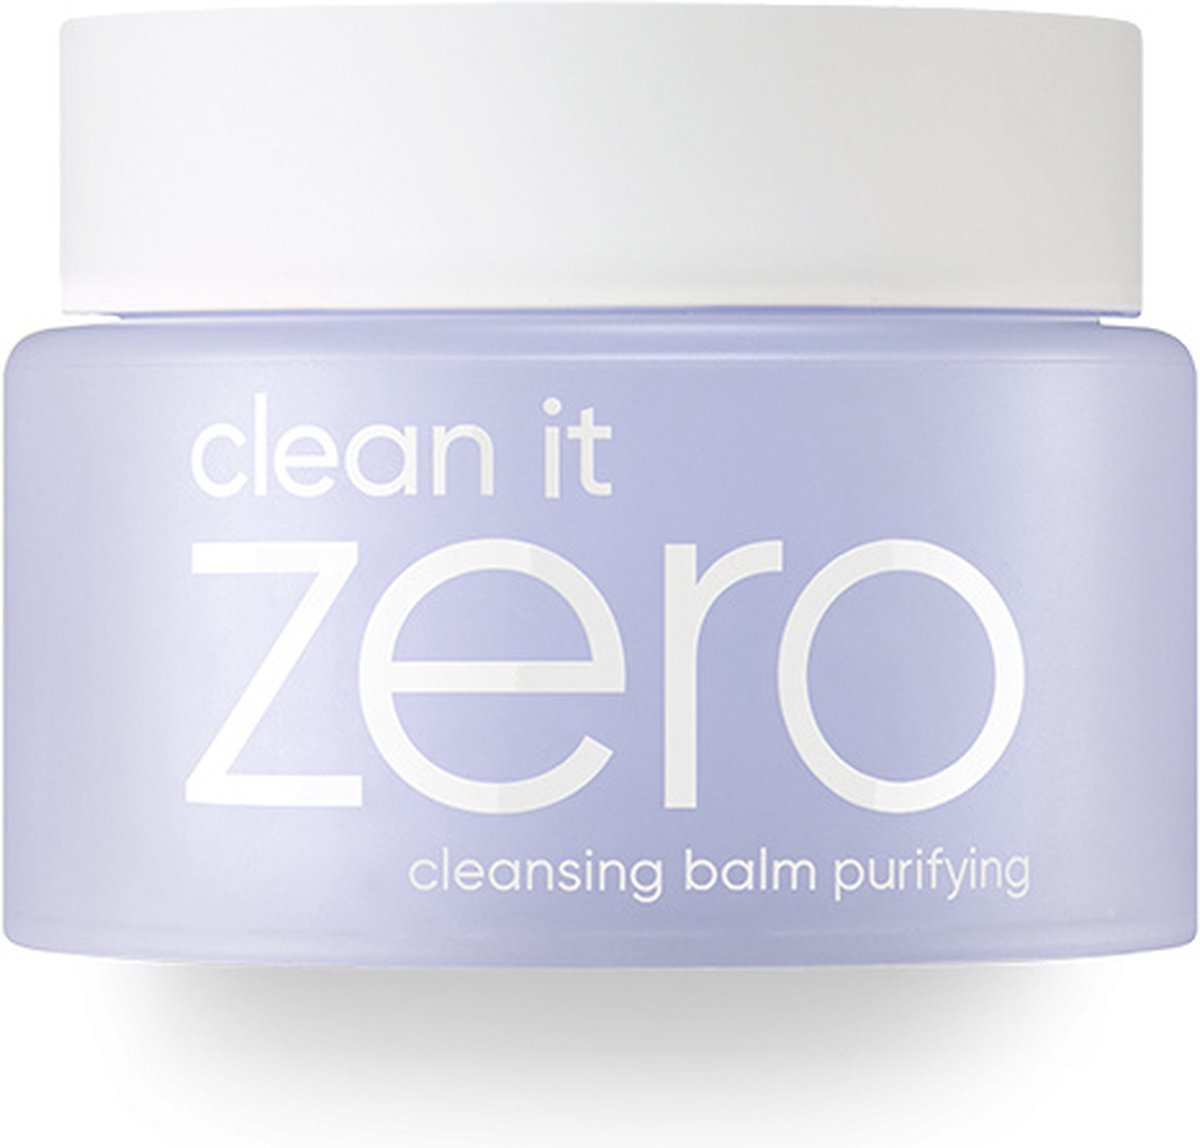 Banila Co - Clean It Zero Cleansing Balm Purifying - 100 mL